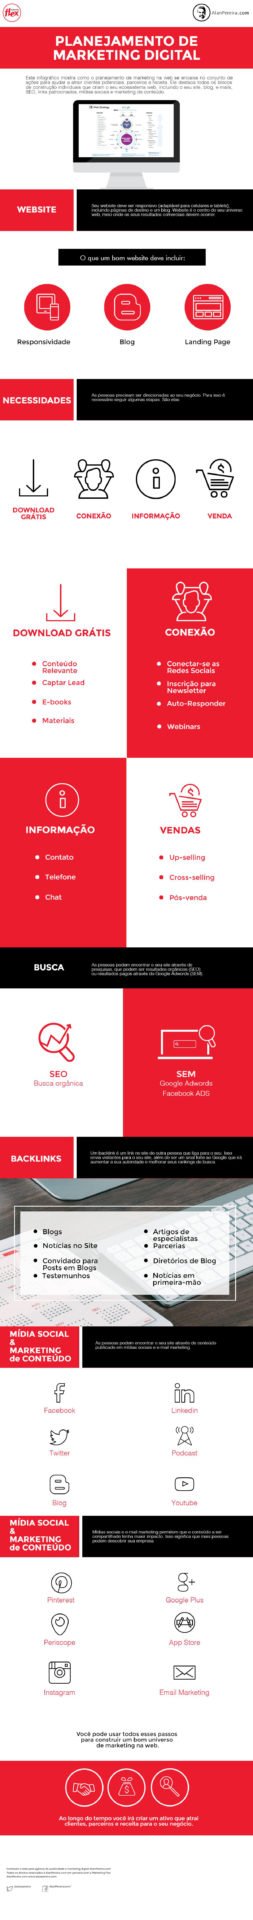 infografico-marketing-digital2016 Infográfico: Planejamento de Marketing Digital